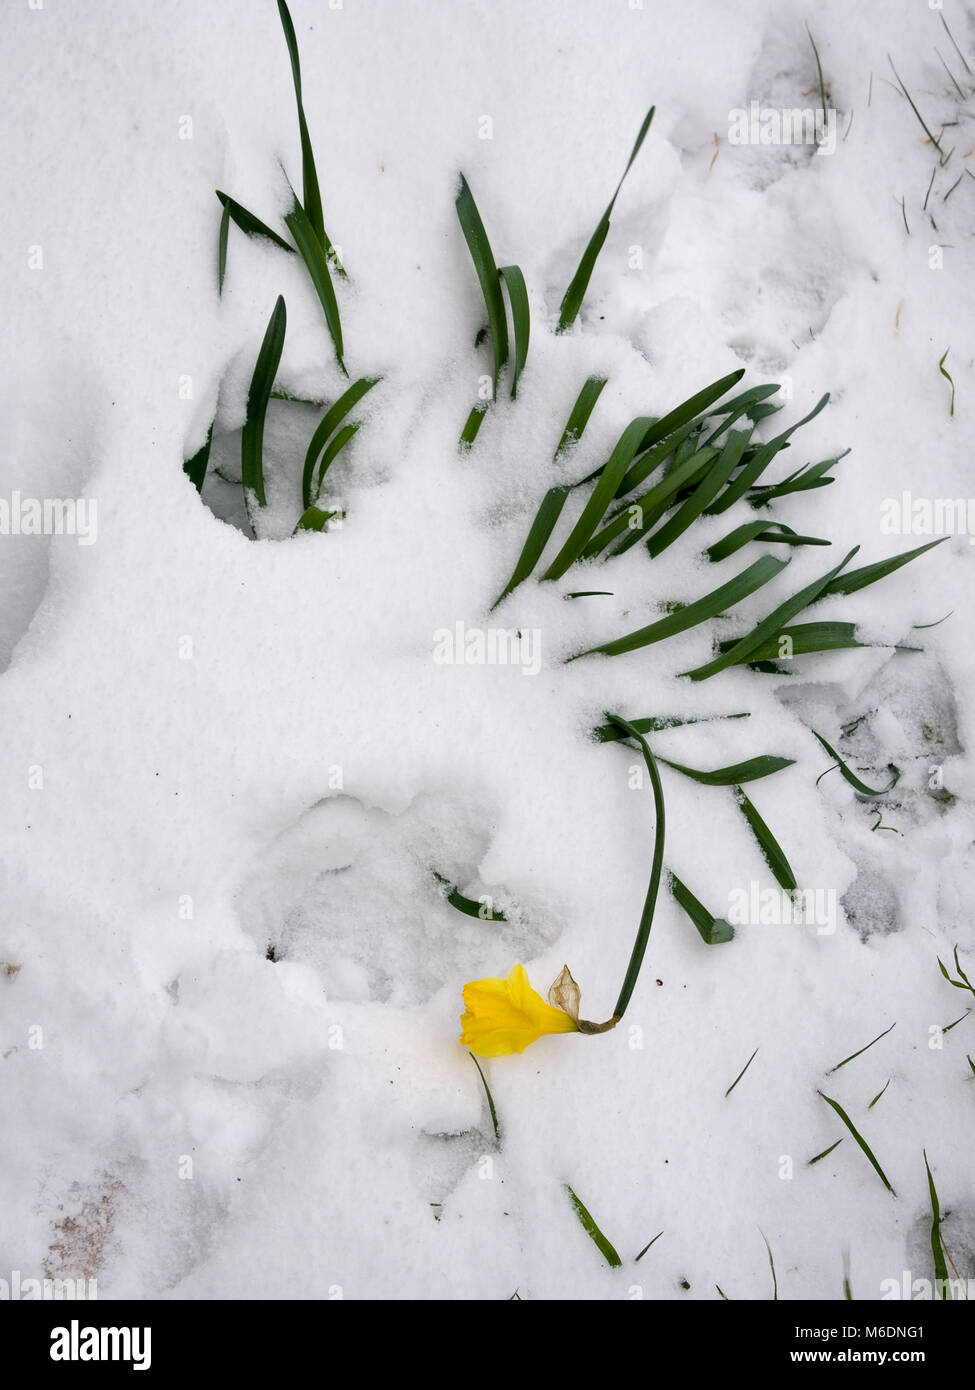 Marzo 2018. Daffodil schiacciato dalla neve pesante. Foto Stock